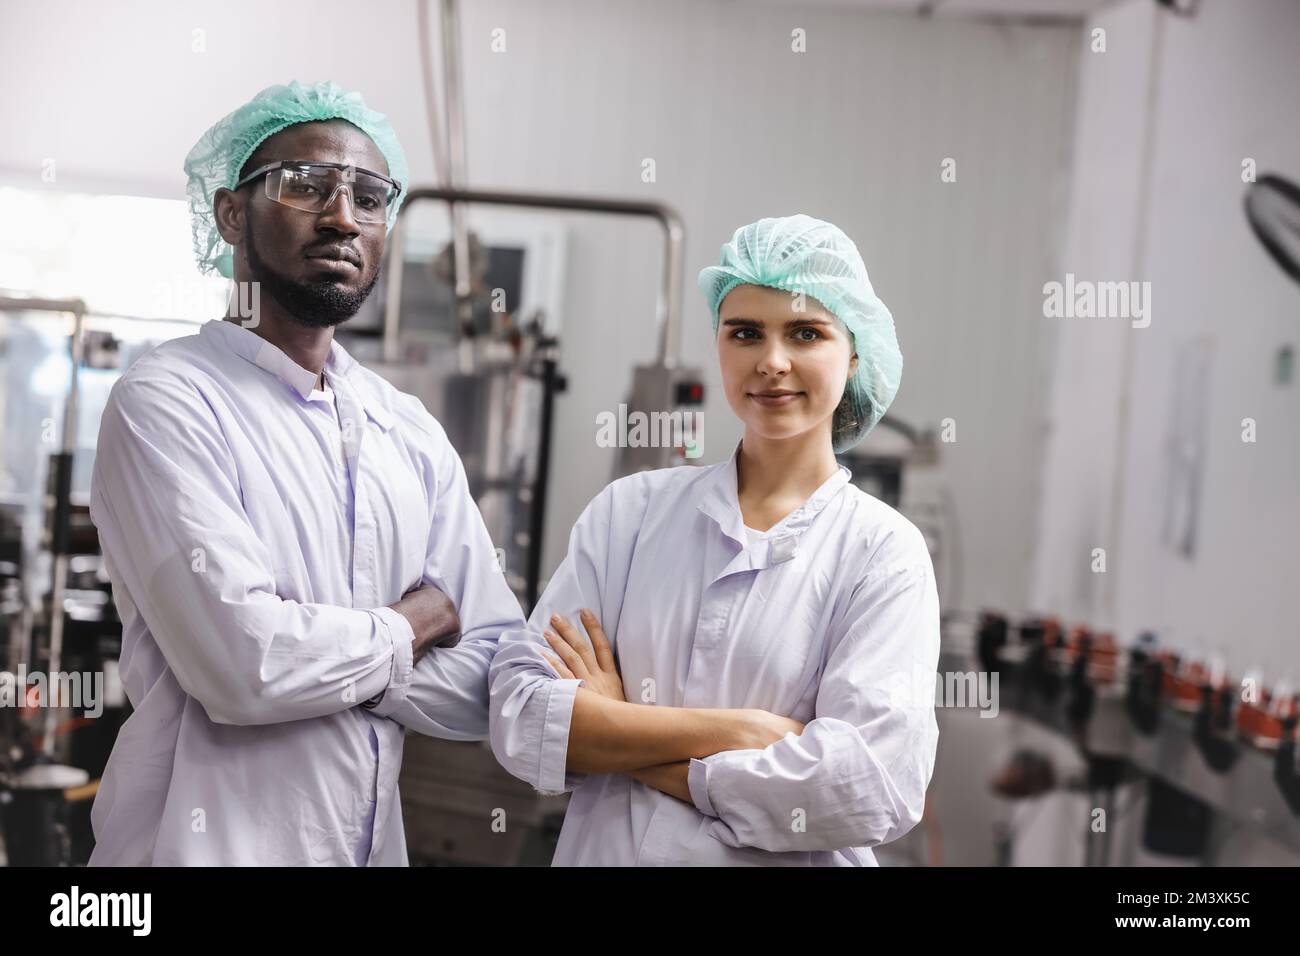 Porträtmitarbeiter in der Lebensmittel- und Getränkeindustrie mischen sich im Stehen mit einem glücklichen Lächeln Stockfoto